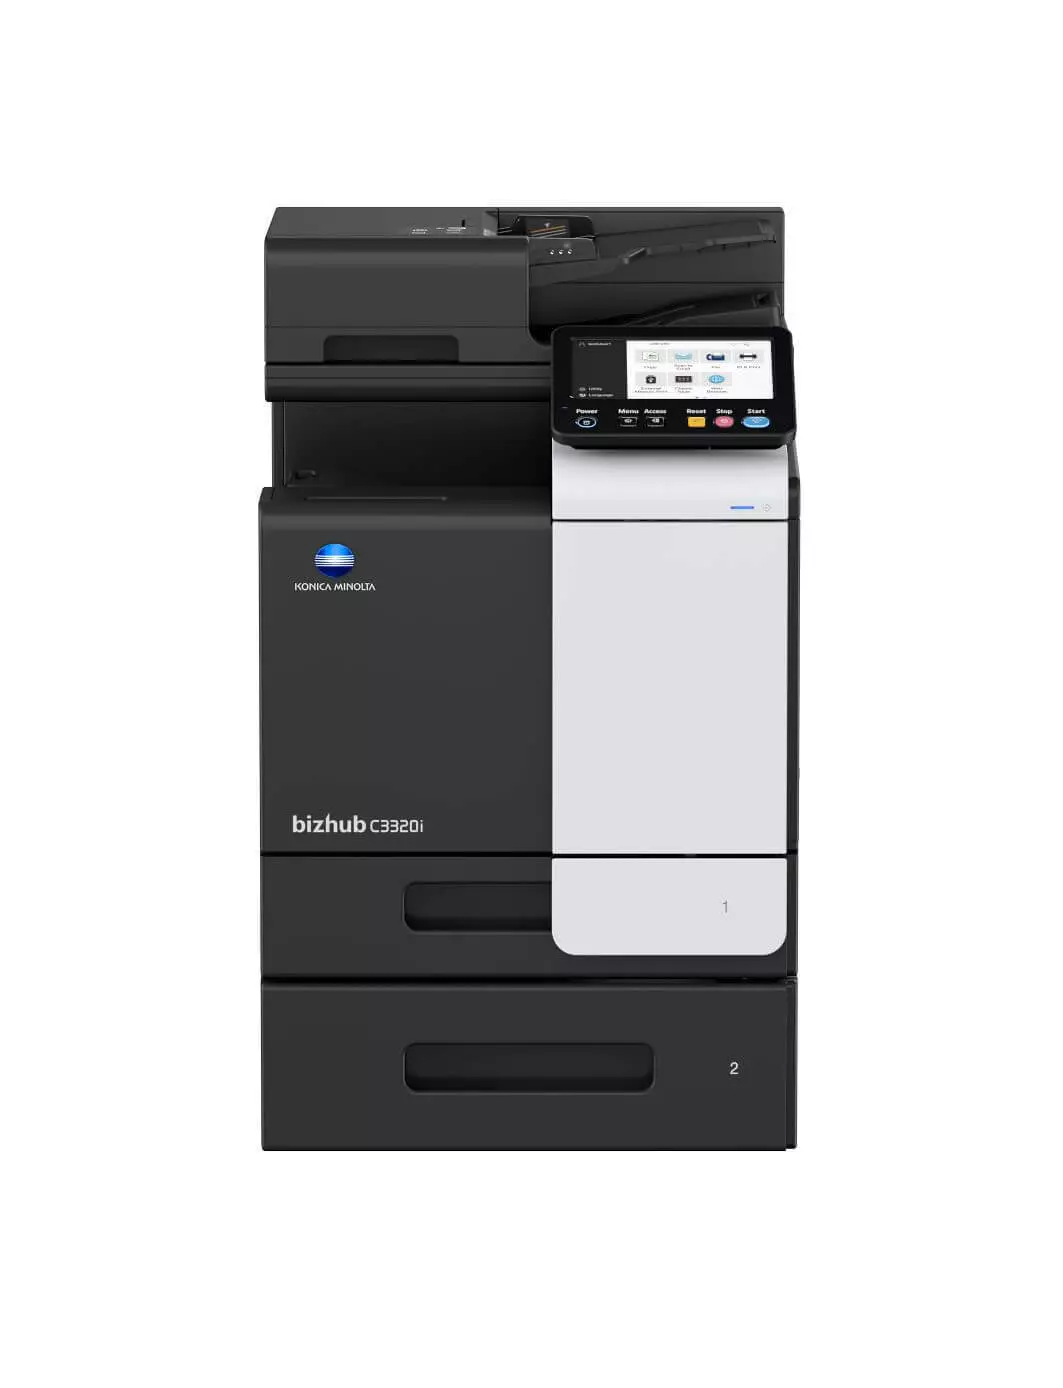 Multifunksjonell Konica Minolta i-series bizhub c3320i-printer